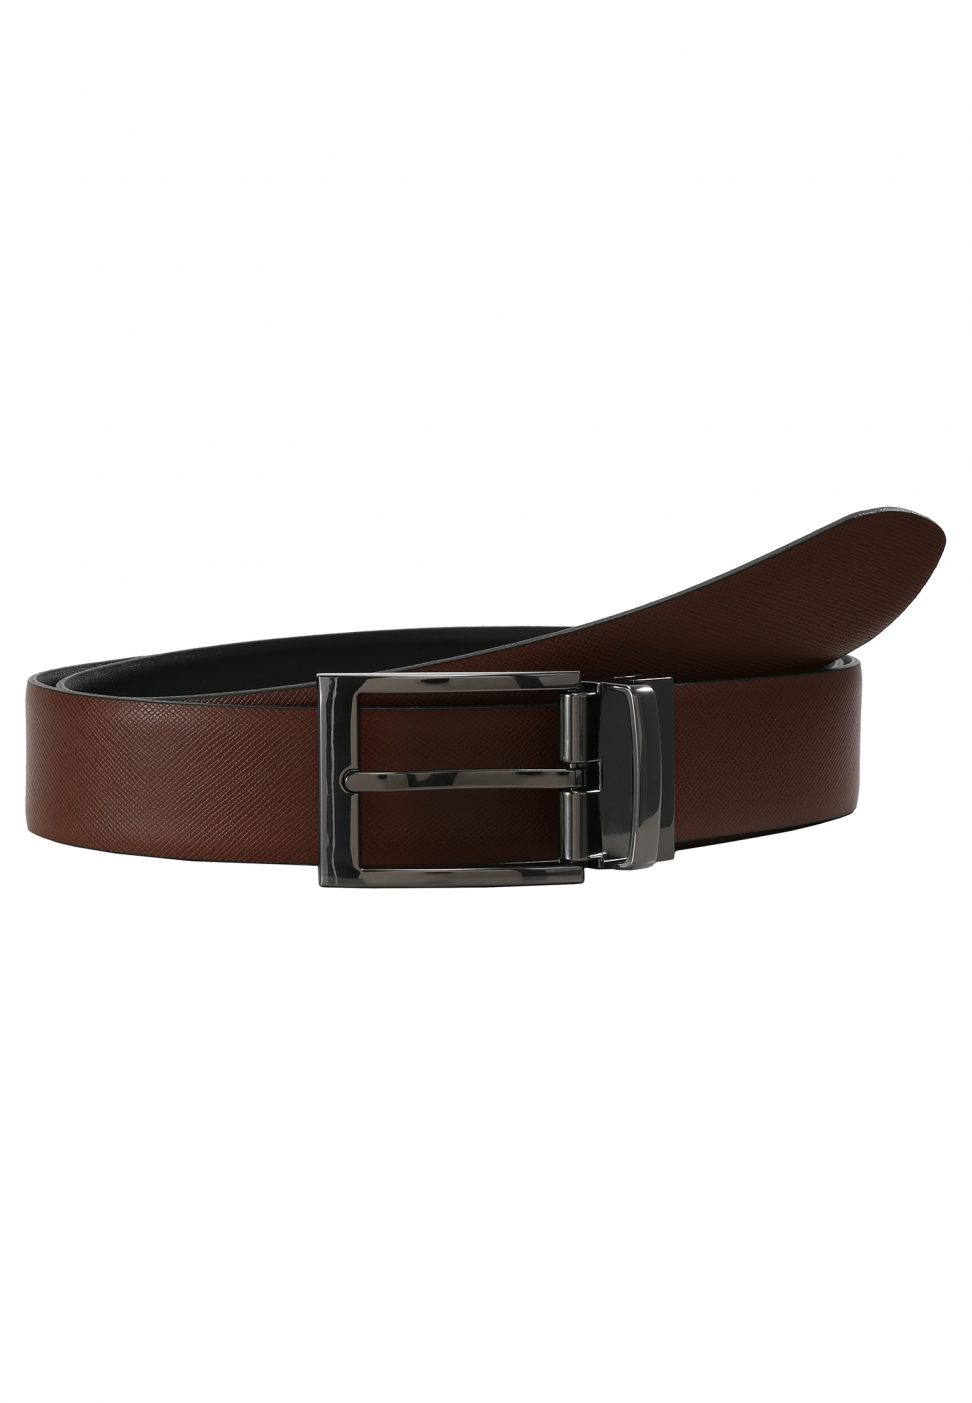 LLOYD Men's Belts Pasek Skórzany dwustronny 813/56-czarny/brązowy 3,5 cm